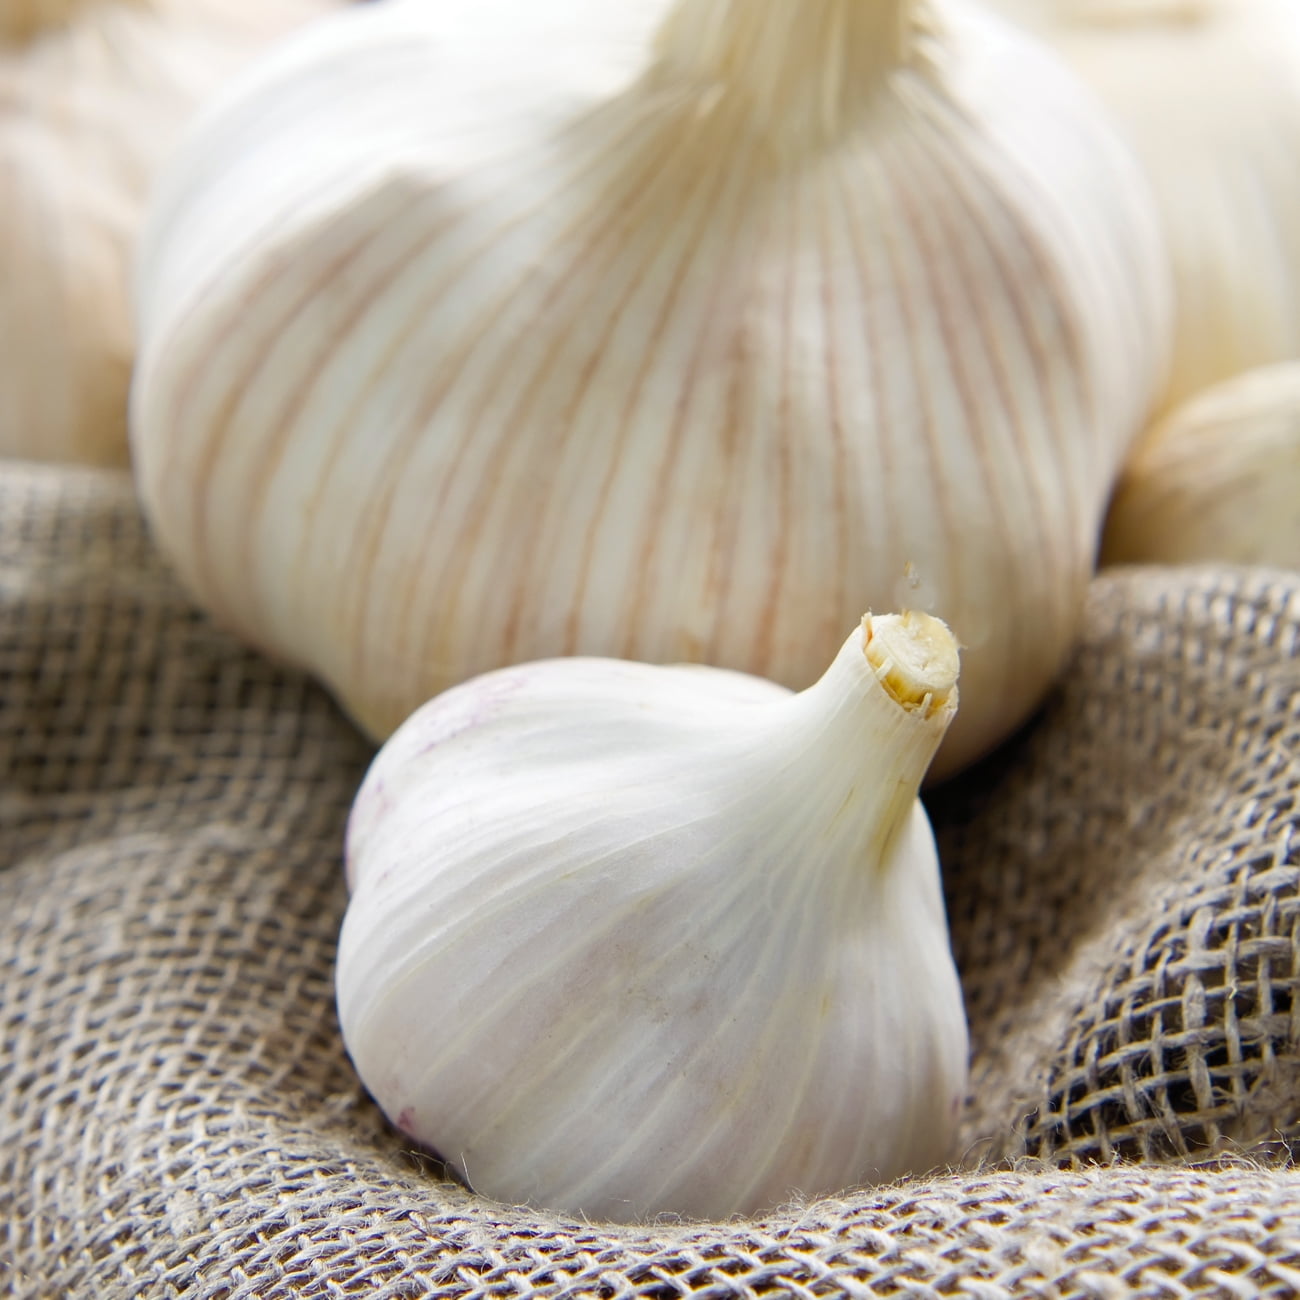 Van Zyverden - Garlic - Vegetable - Dormant Bulb - GMO Free - Full Sun; 6+ hrs, White